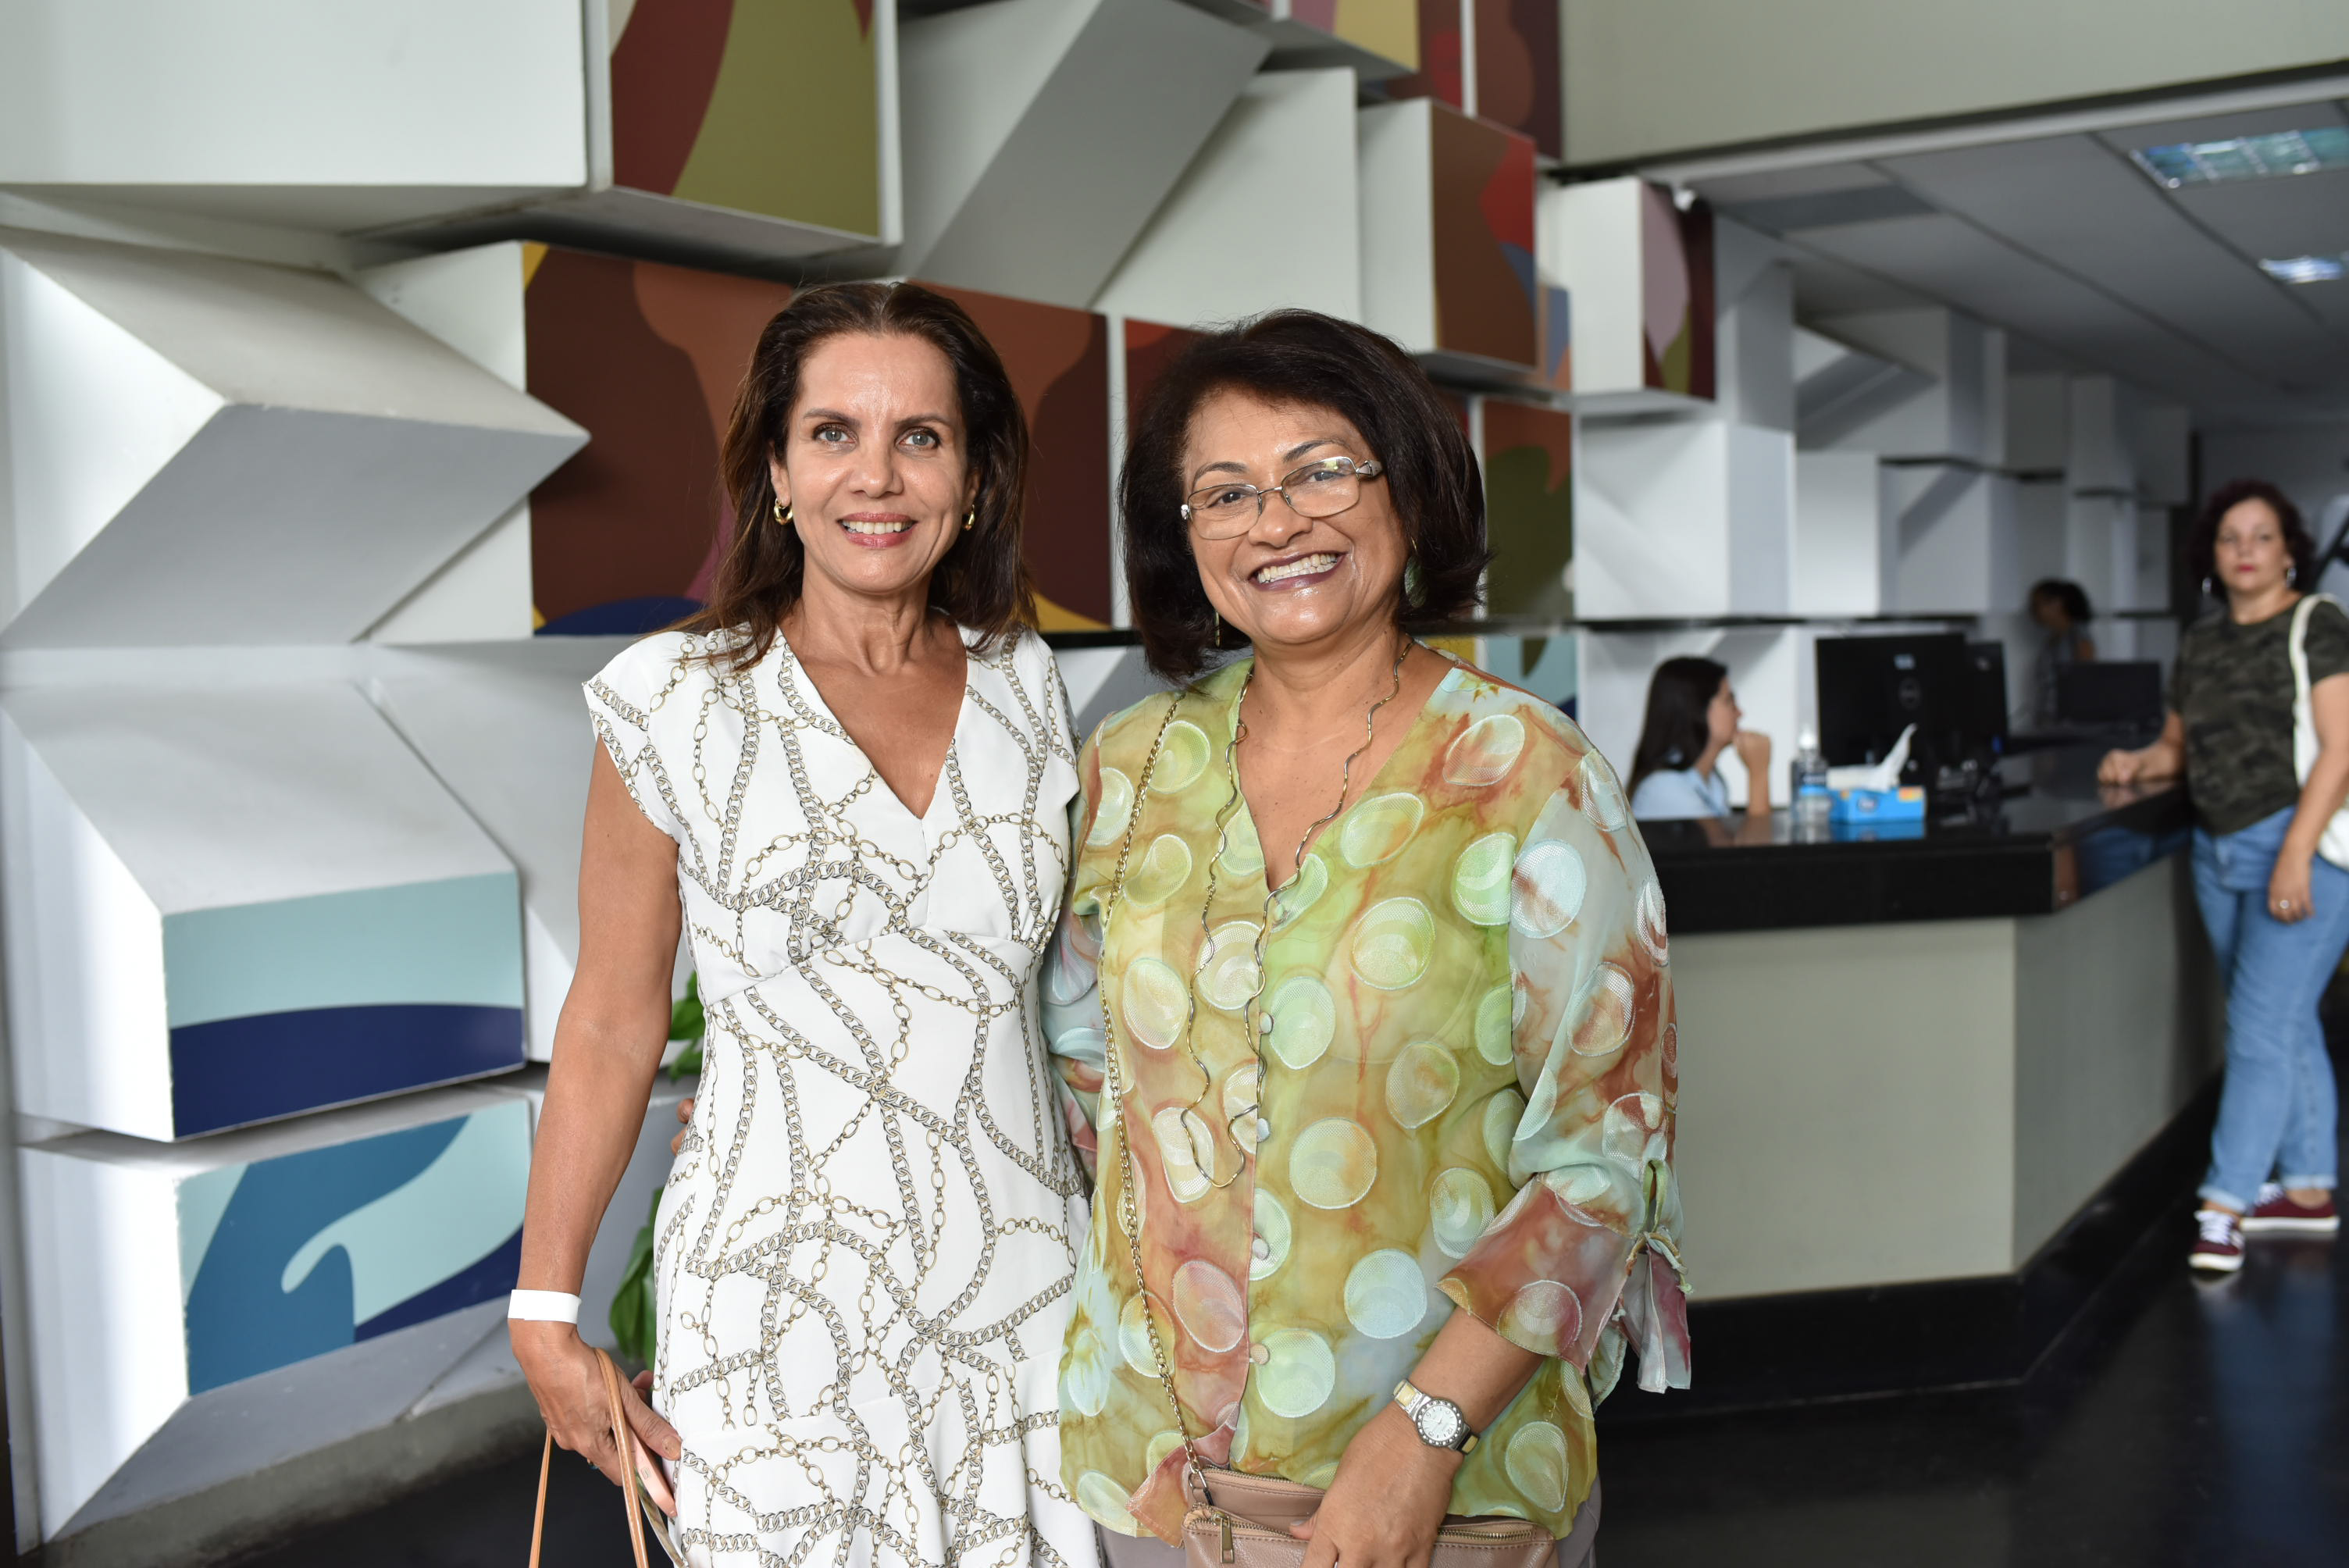 Roda de Conversa da Rede Gazeta 2020 - Dia Internacional da Mulher: Marcia Tourinho e Damaris Lorenzoni